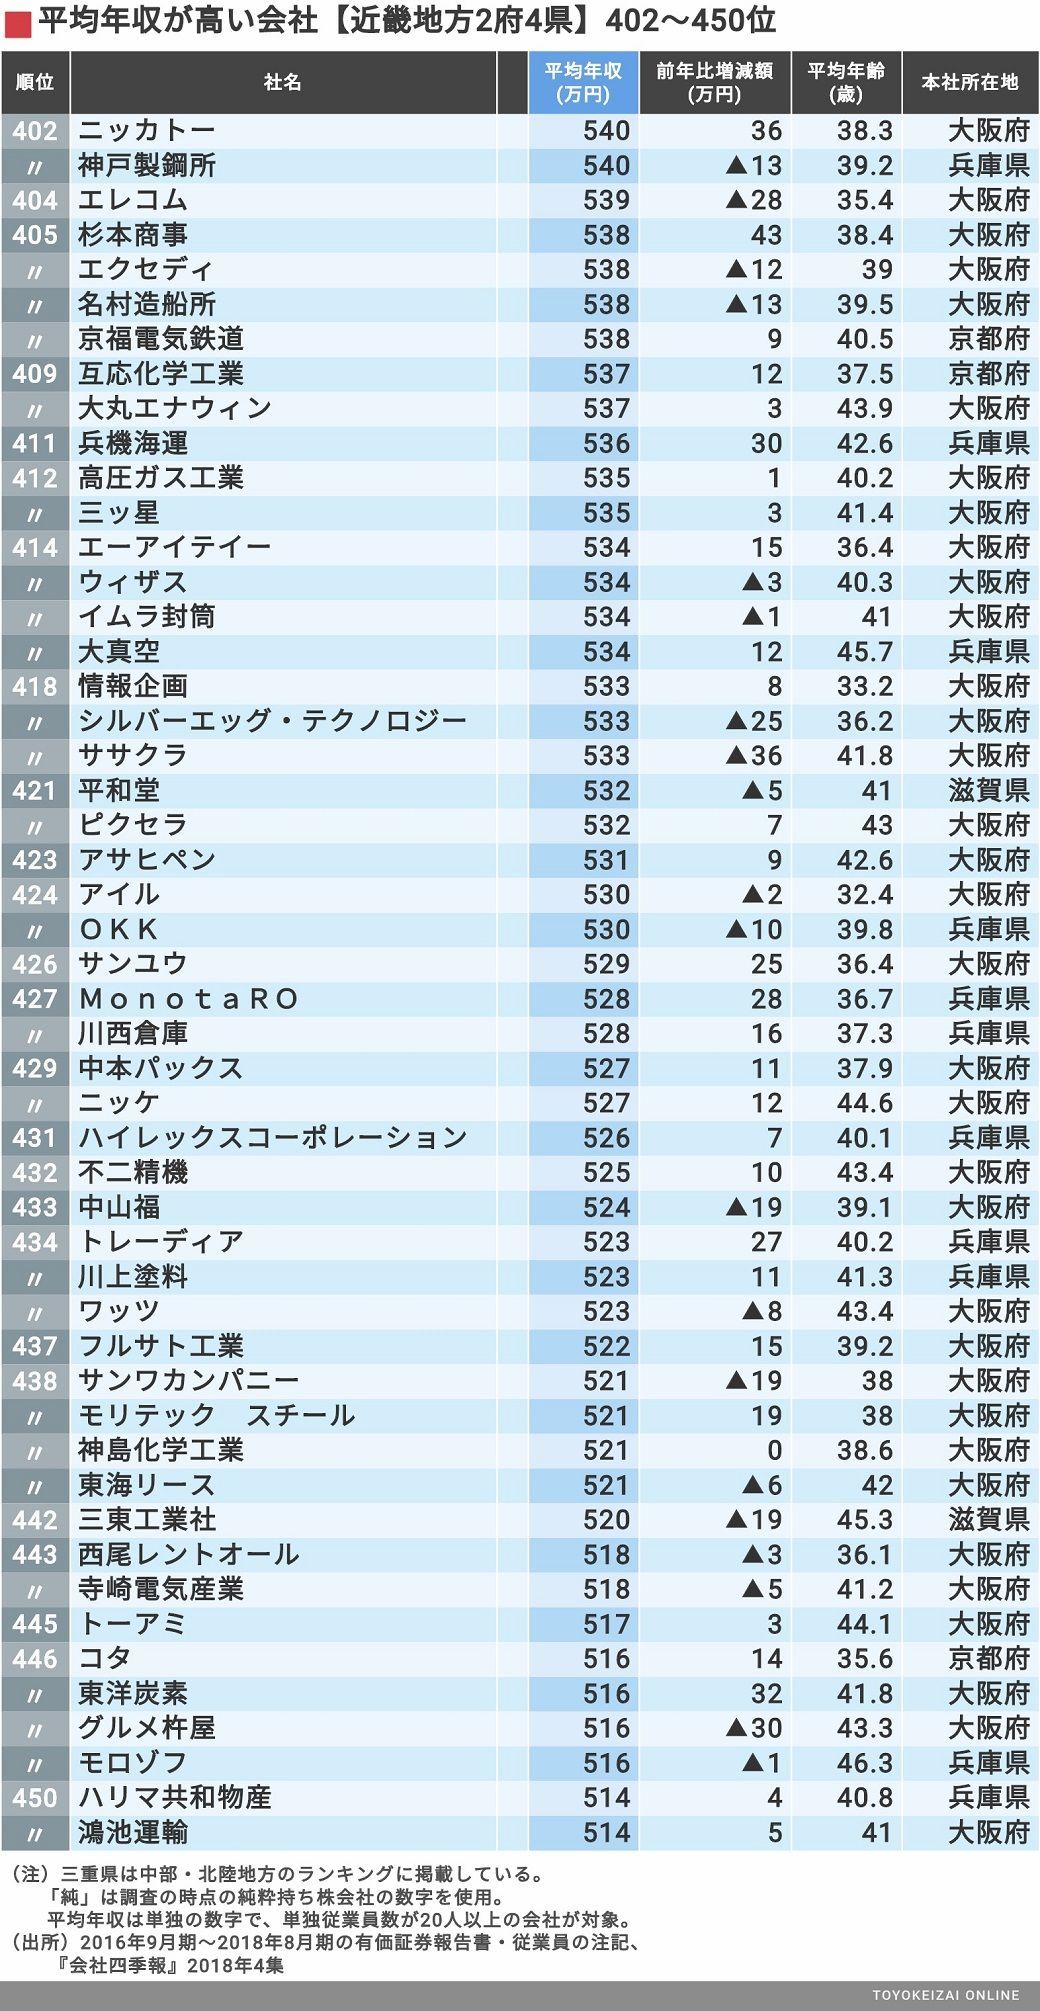 平均年収 近畿2府4県 598社ランキング 賃金 生涯給料ランキング 東洋経済オンライン 経済ニュースの新基準